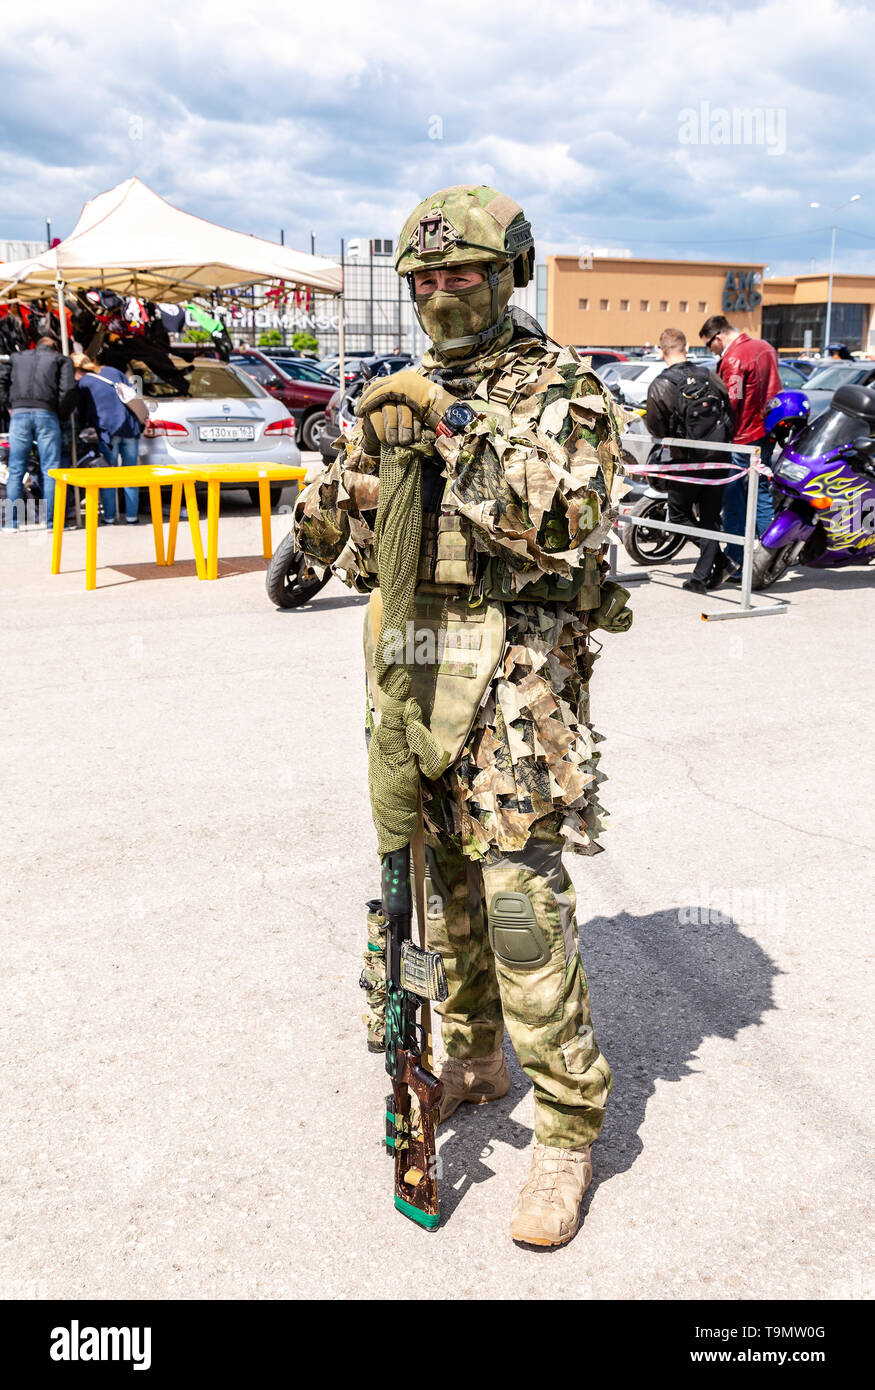 Samara, Rusia - Mayo 18, 2019: soldado ruso no identificado en uniforme  militar de camuflaje con un rifle de francotirador en mano en la calle, en  la ciudad de vacaciones Fotografía de stock - Alamy